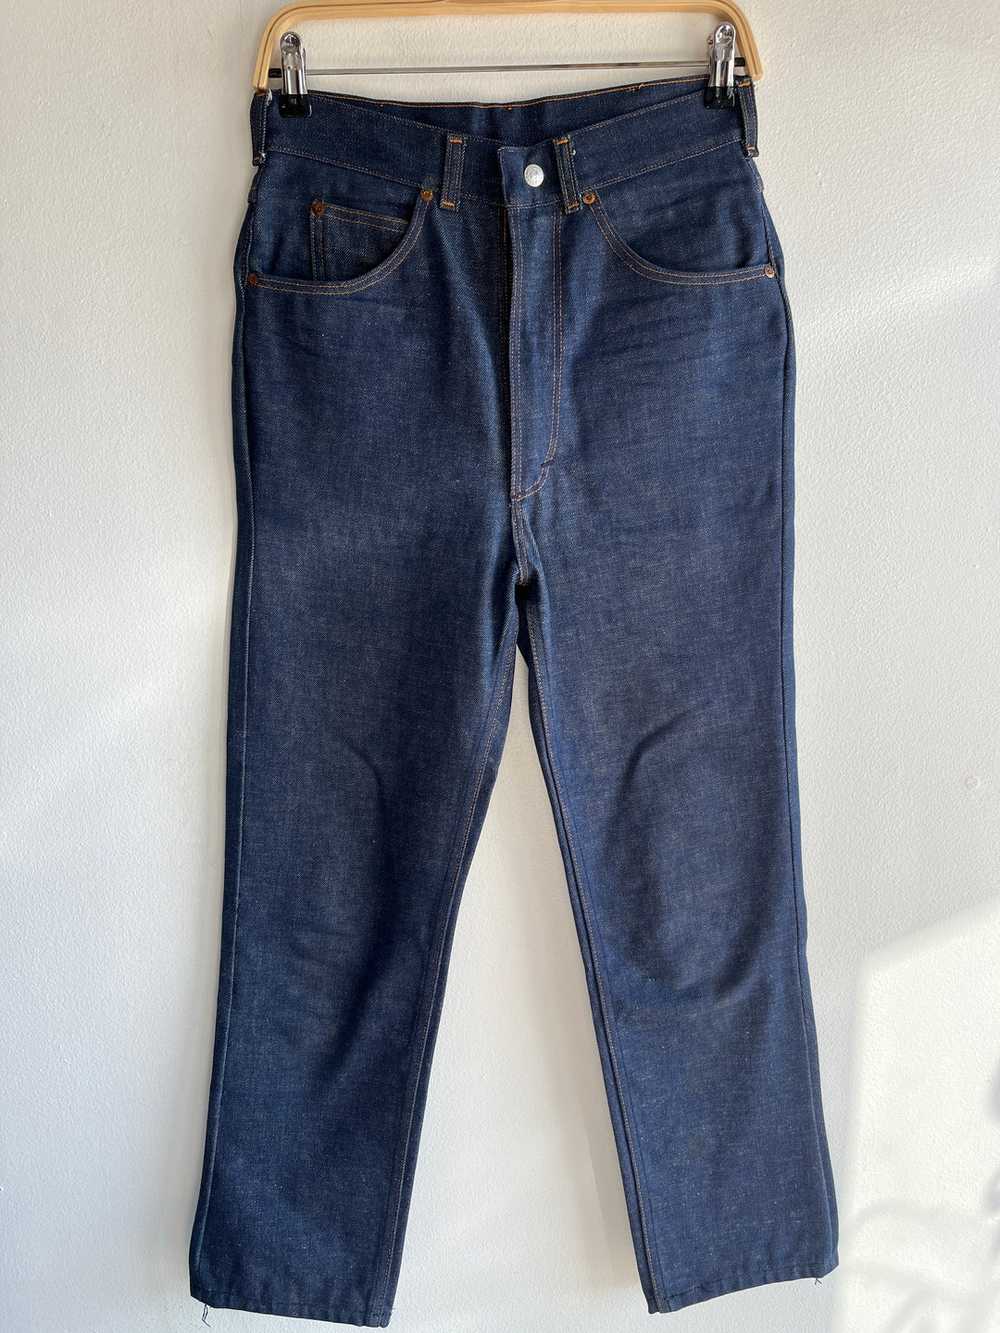 Vintage 1950’s Deadstock Foremost Denim Jeans - image 1